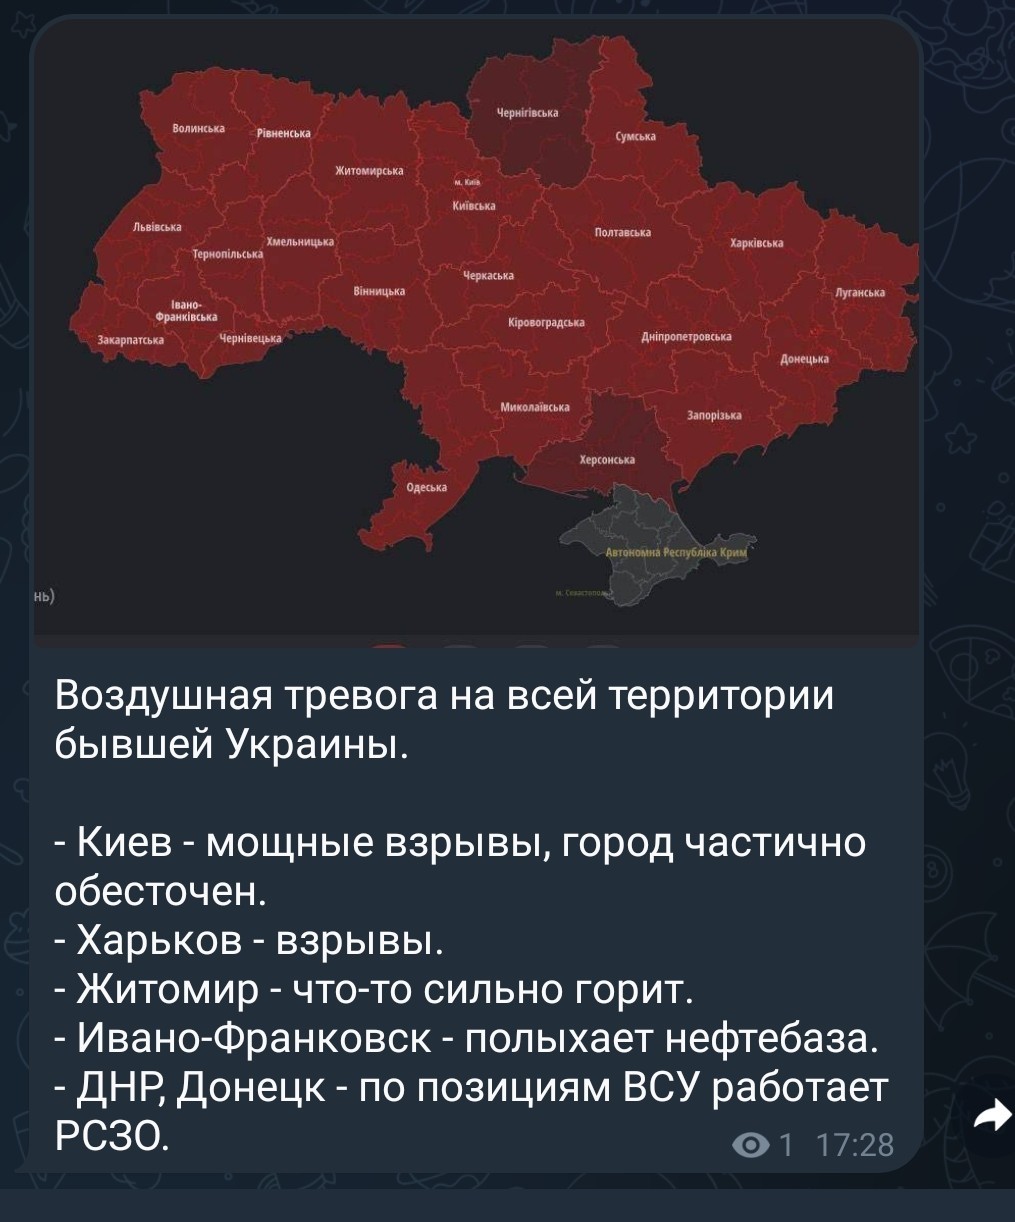 Почему сегодня была тревога. Воздушная тревога на Украине. Воздушная тревога на всей территории Украины. По всей территории Украины объявлена воздушная тревога. Карта воздушных тревог в Украине.